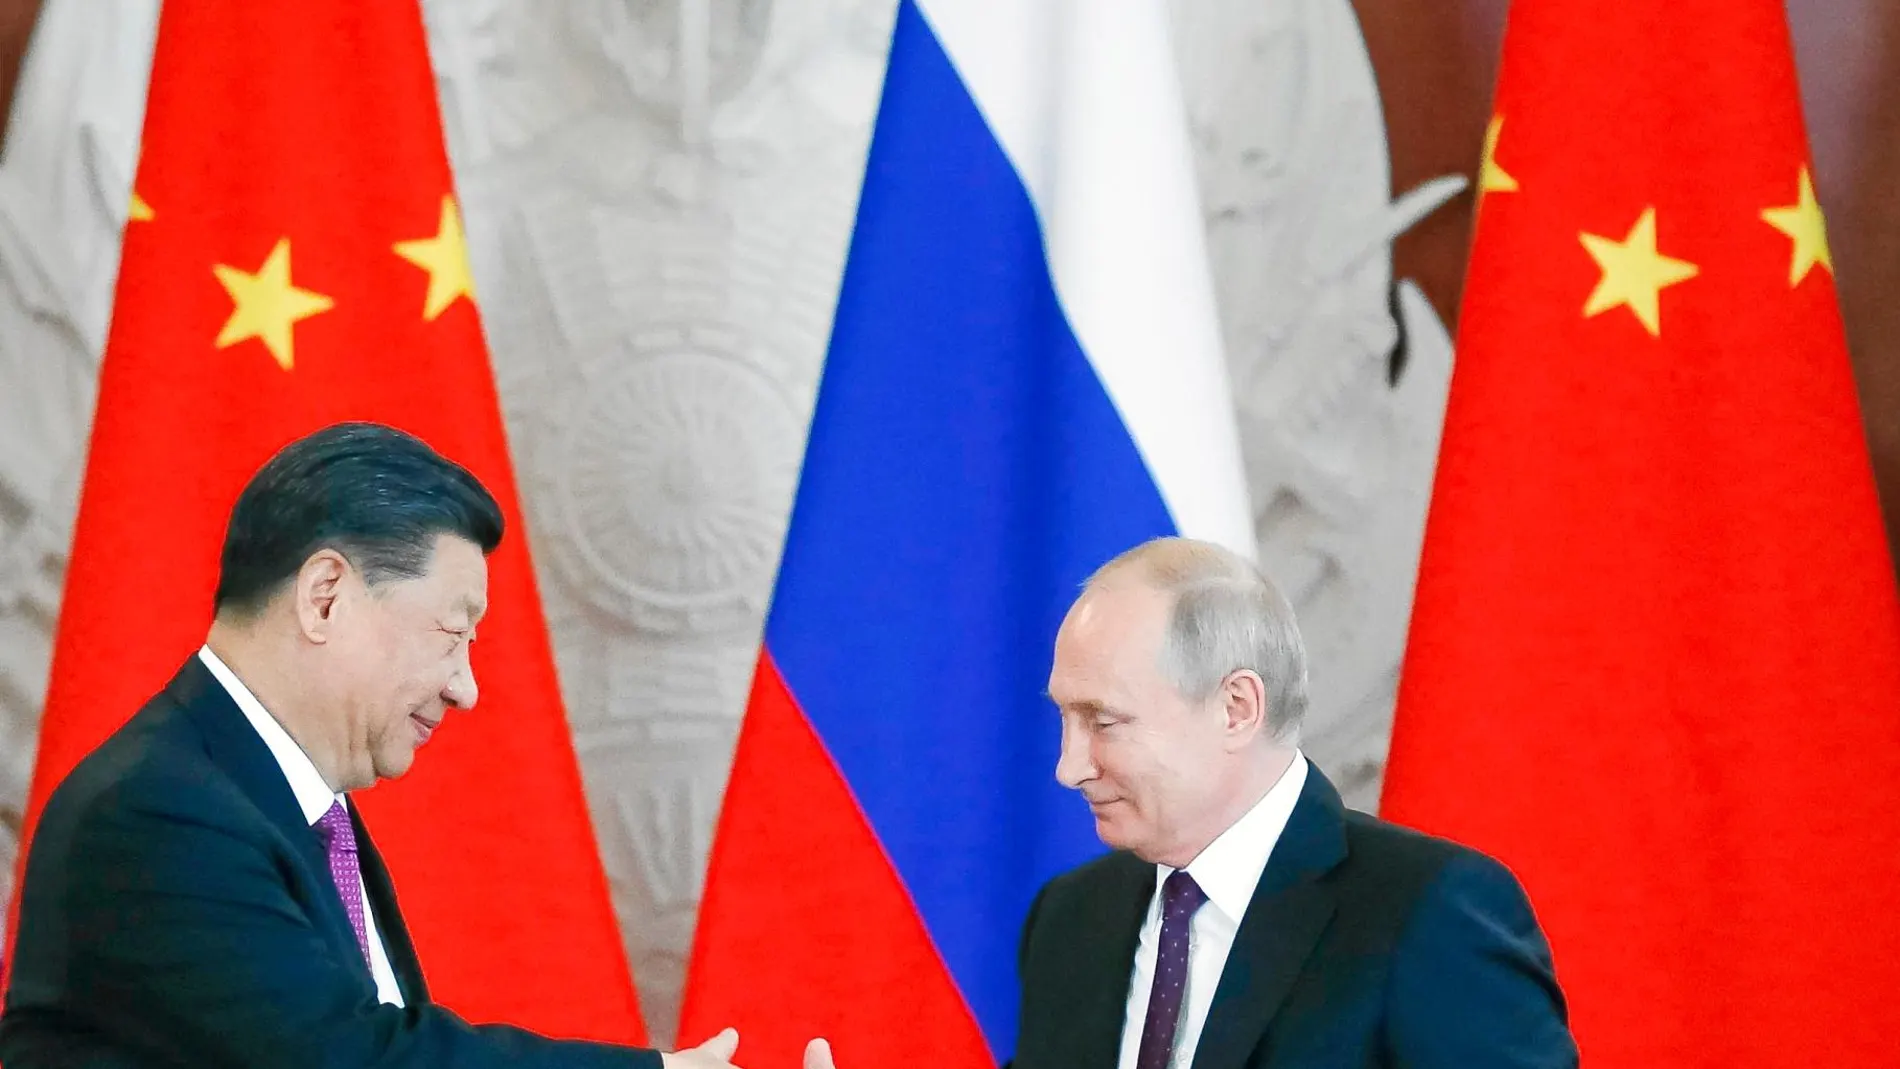 Xi Jinping y Vladimir Putin se saludan ayer en Moscú, donde sellaron su alianza con una treintena de acuerdos bilaterales